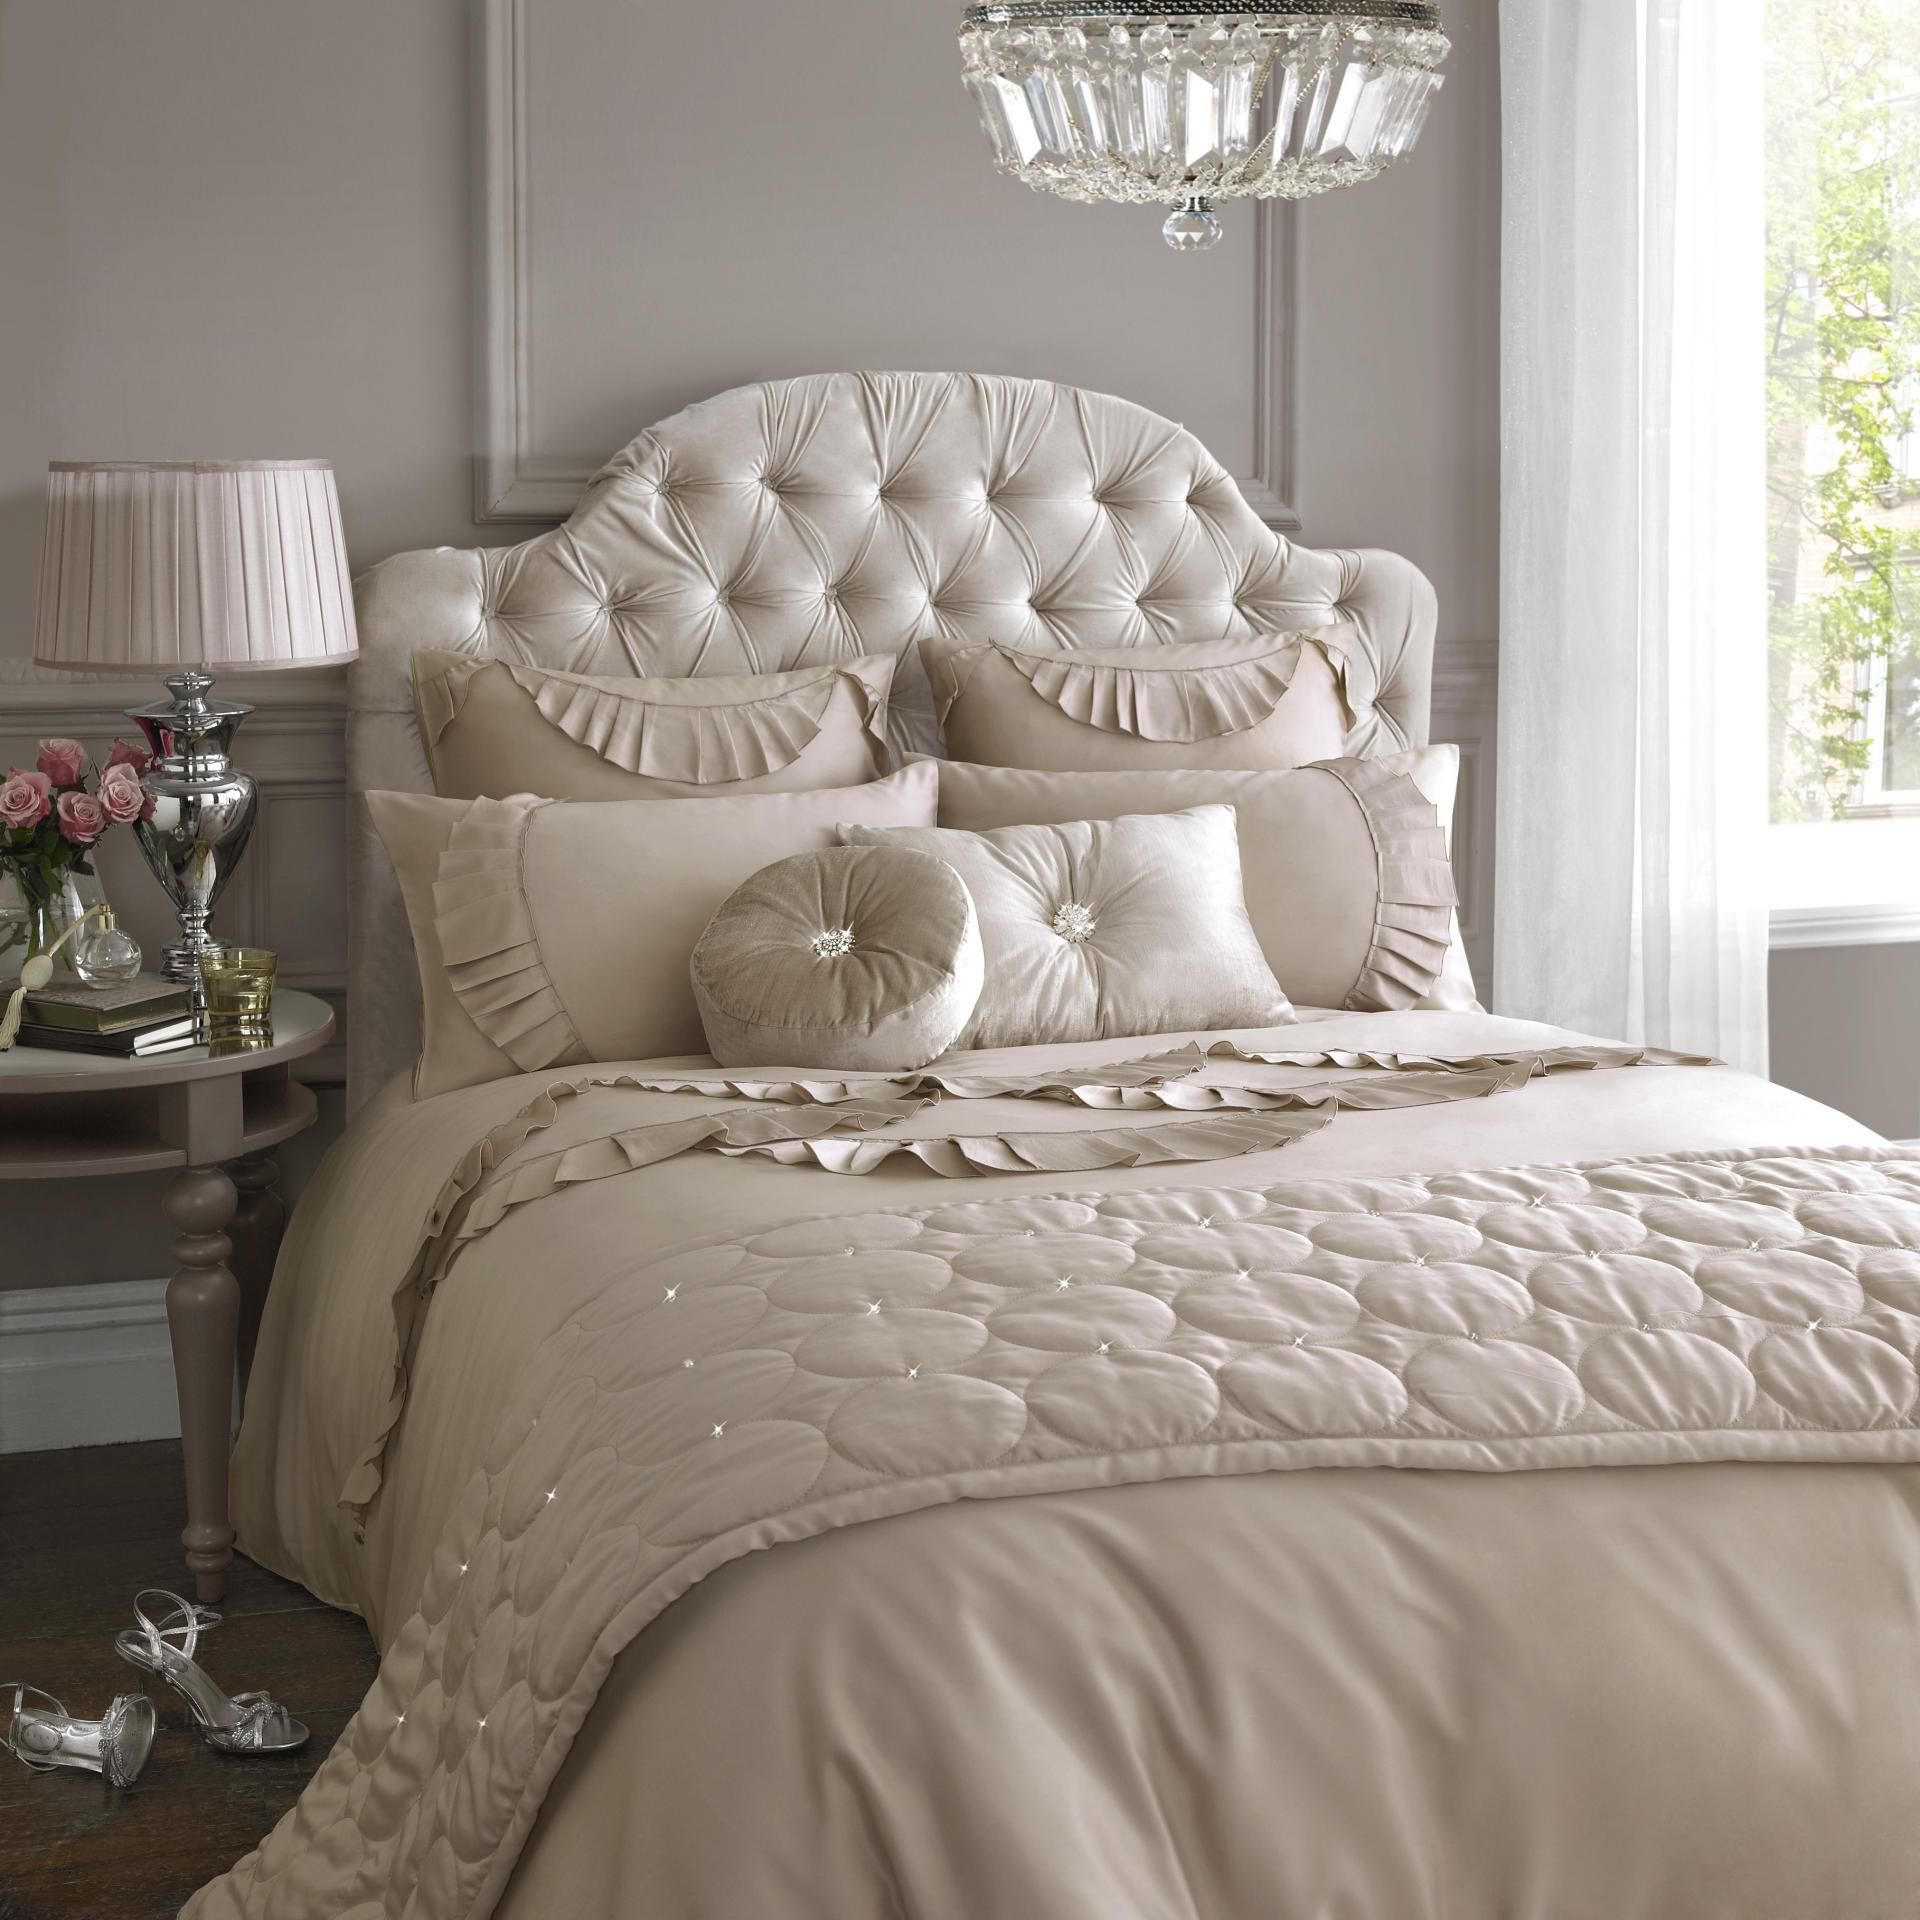 Luxurius Summer Spring Bedding Sets Designs